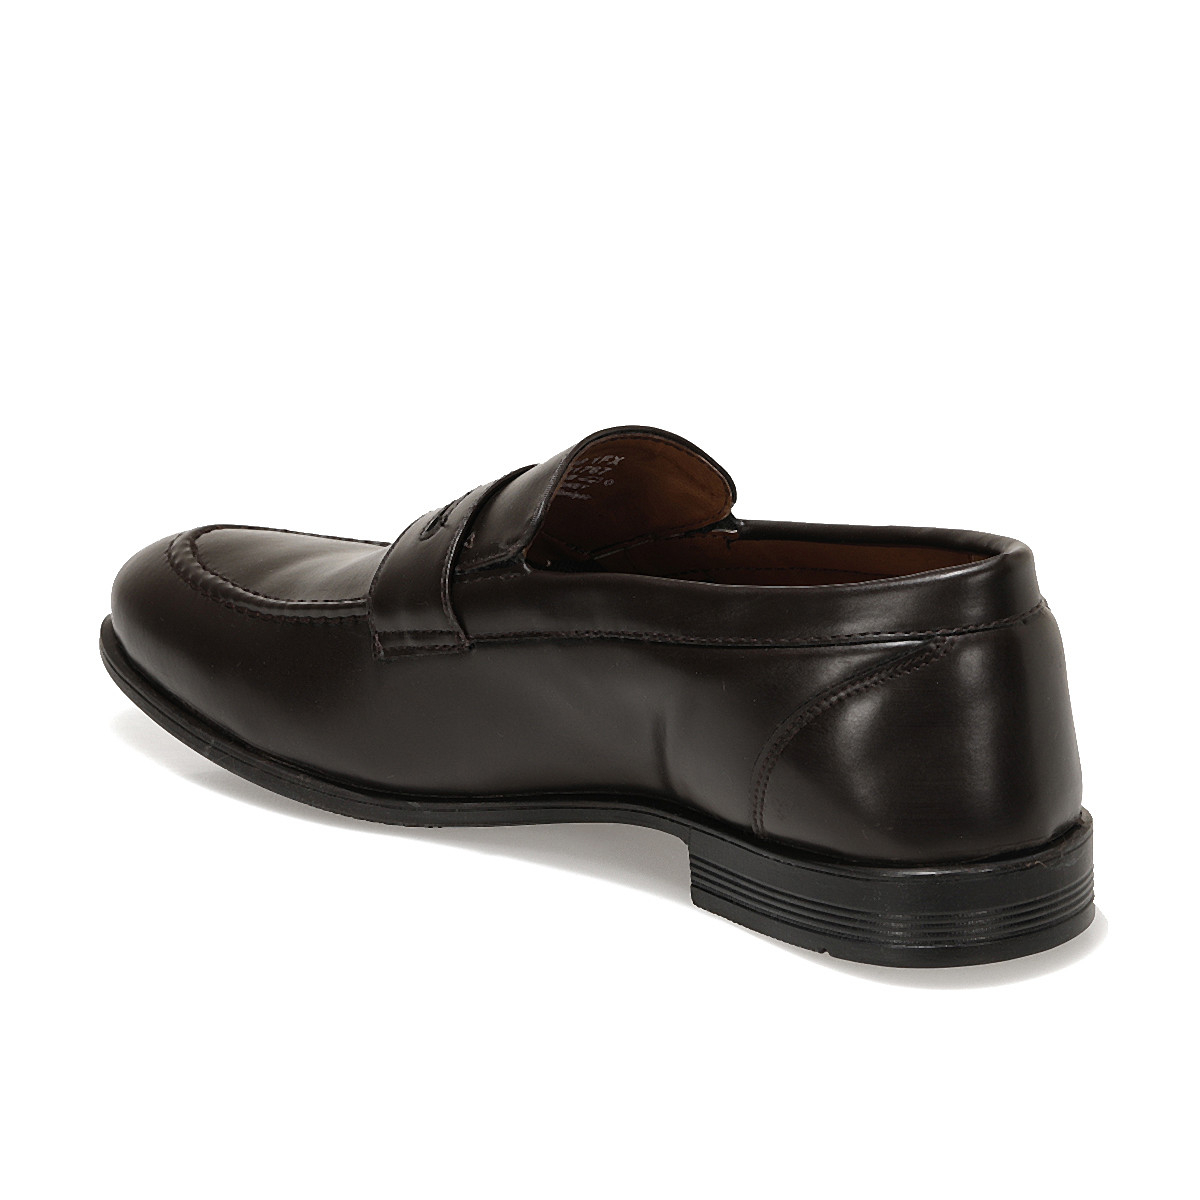 Flo G-218 1FX Kahverengi Erkek Klasik Ayakkabı. 1